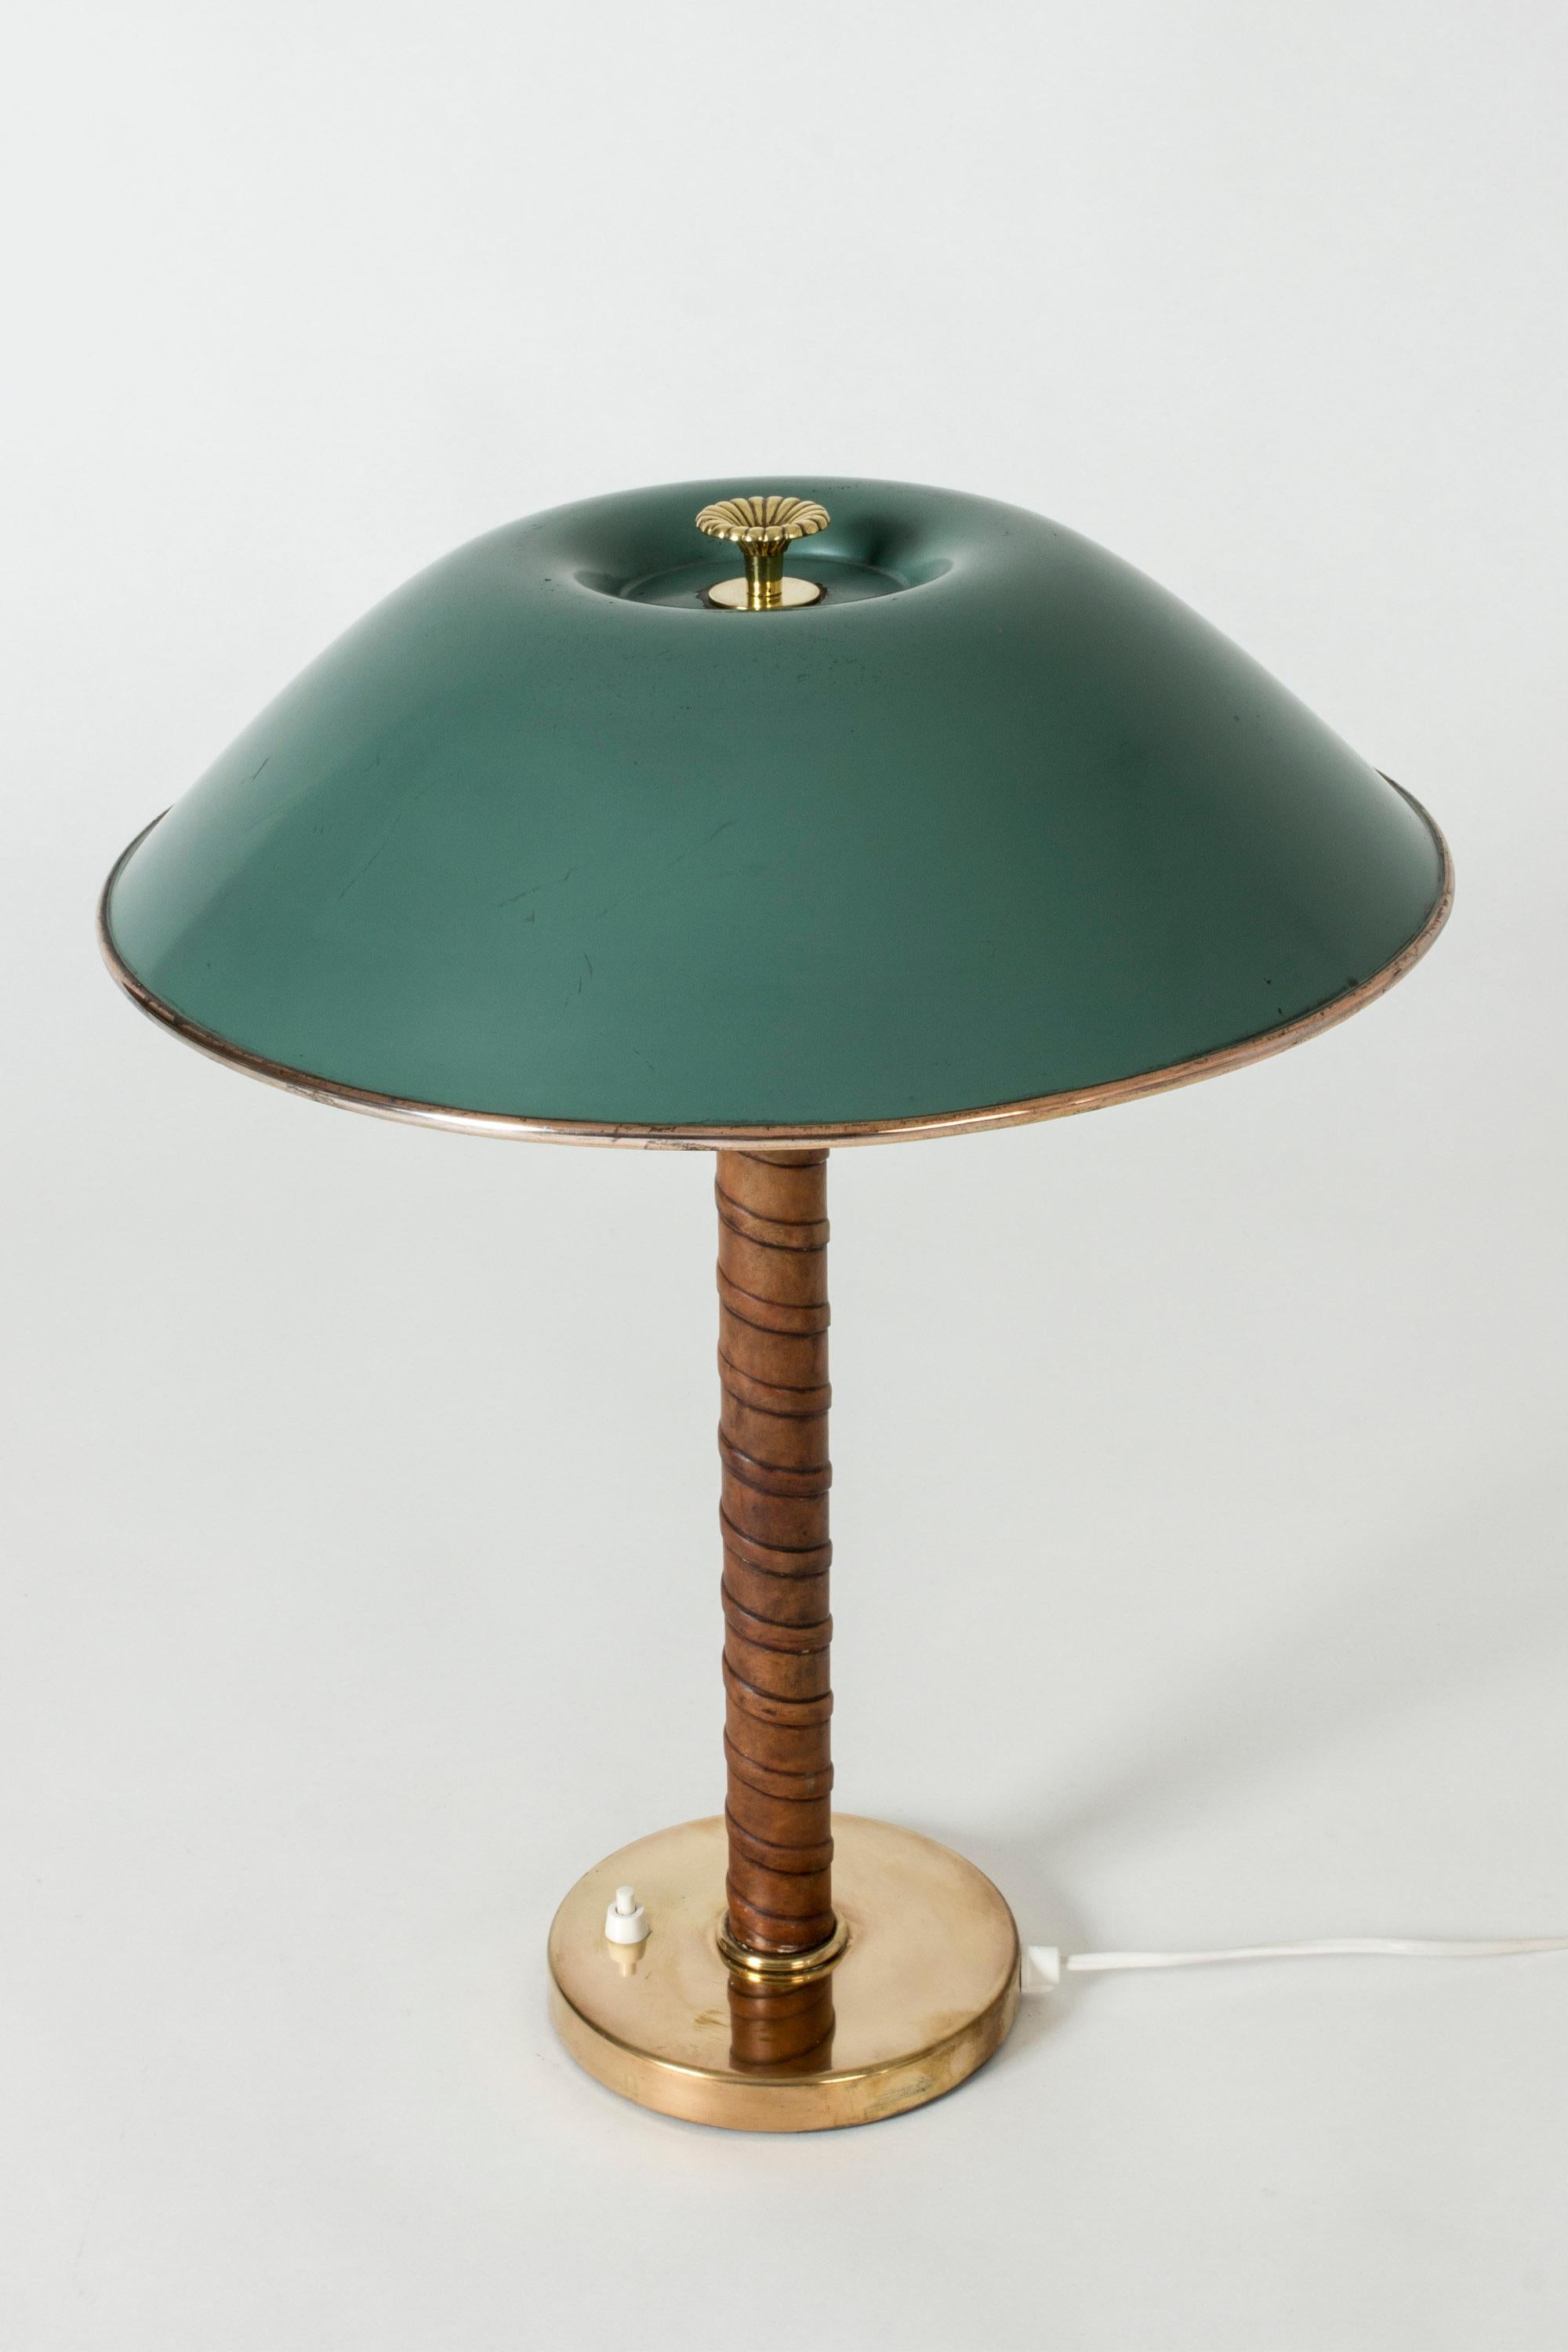 Scandinavian Modern Nordiska Kompaniet Brass Table Lamp with Green Lacquered Shade